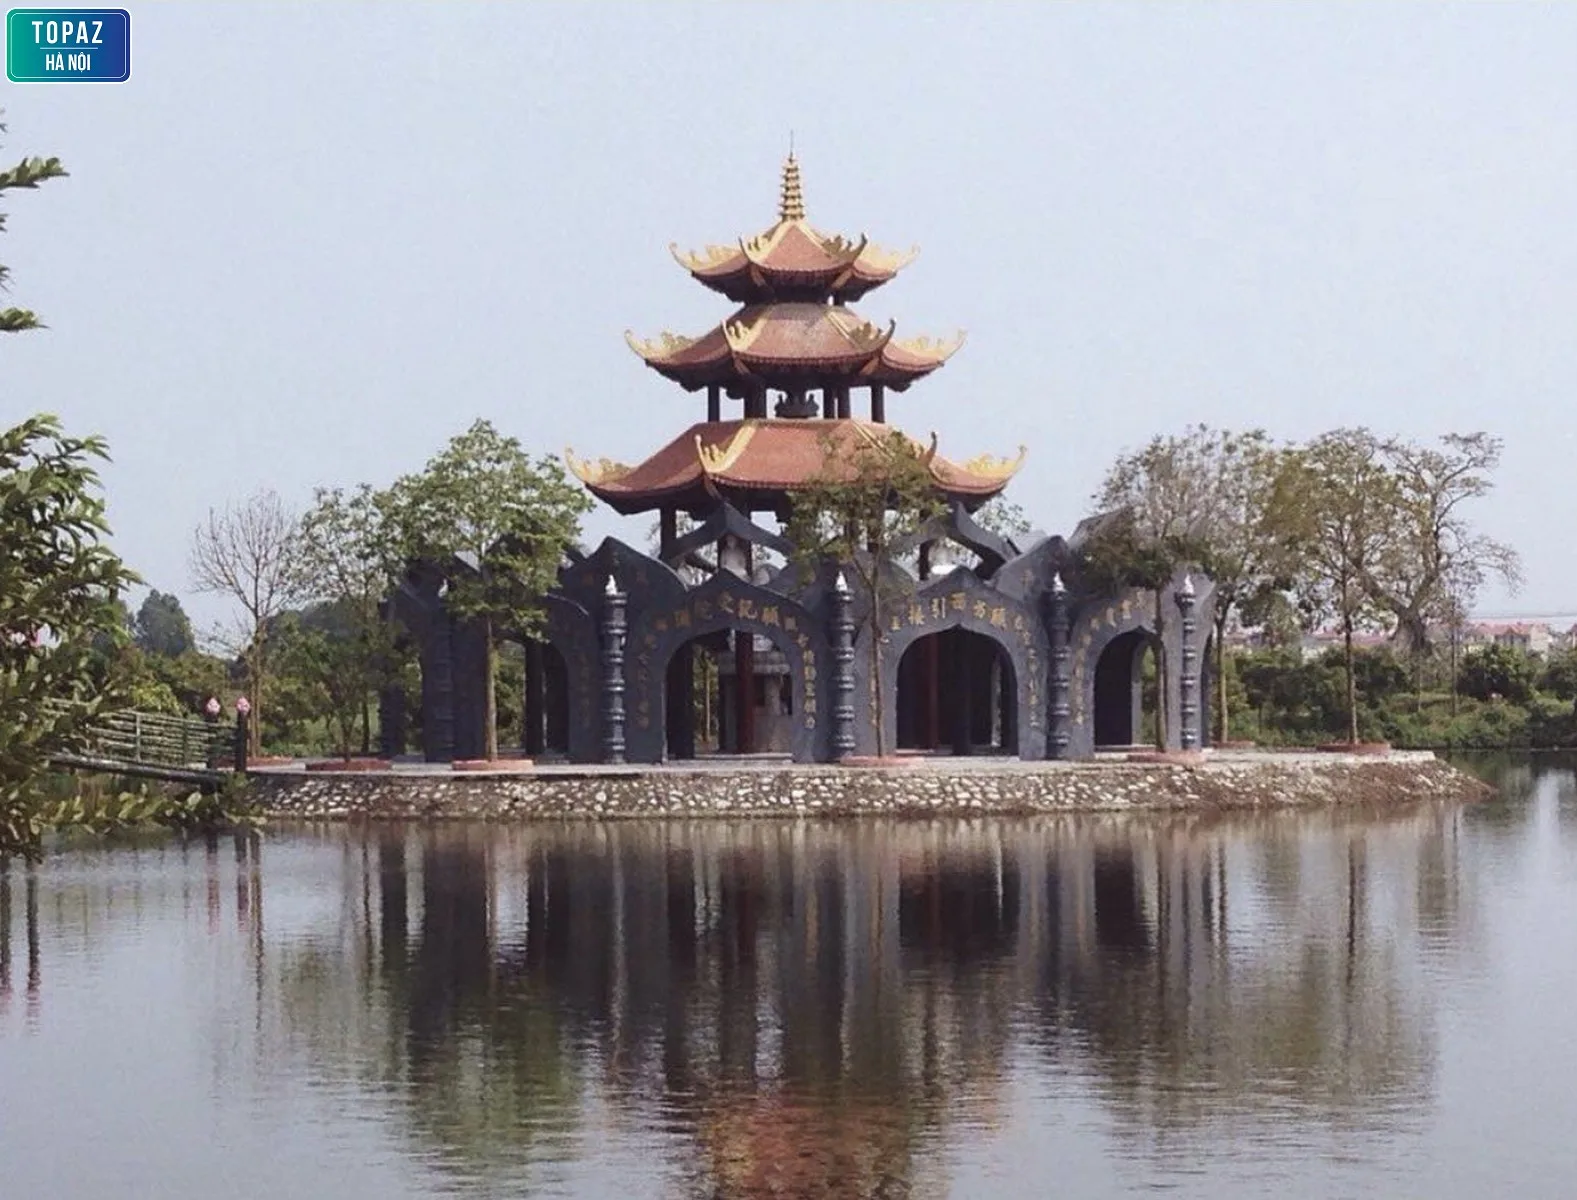 Kiến trúc độc đáo của chùa Đậu 